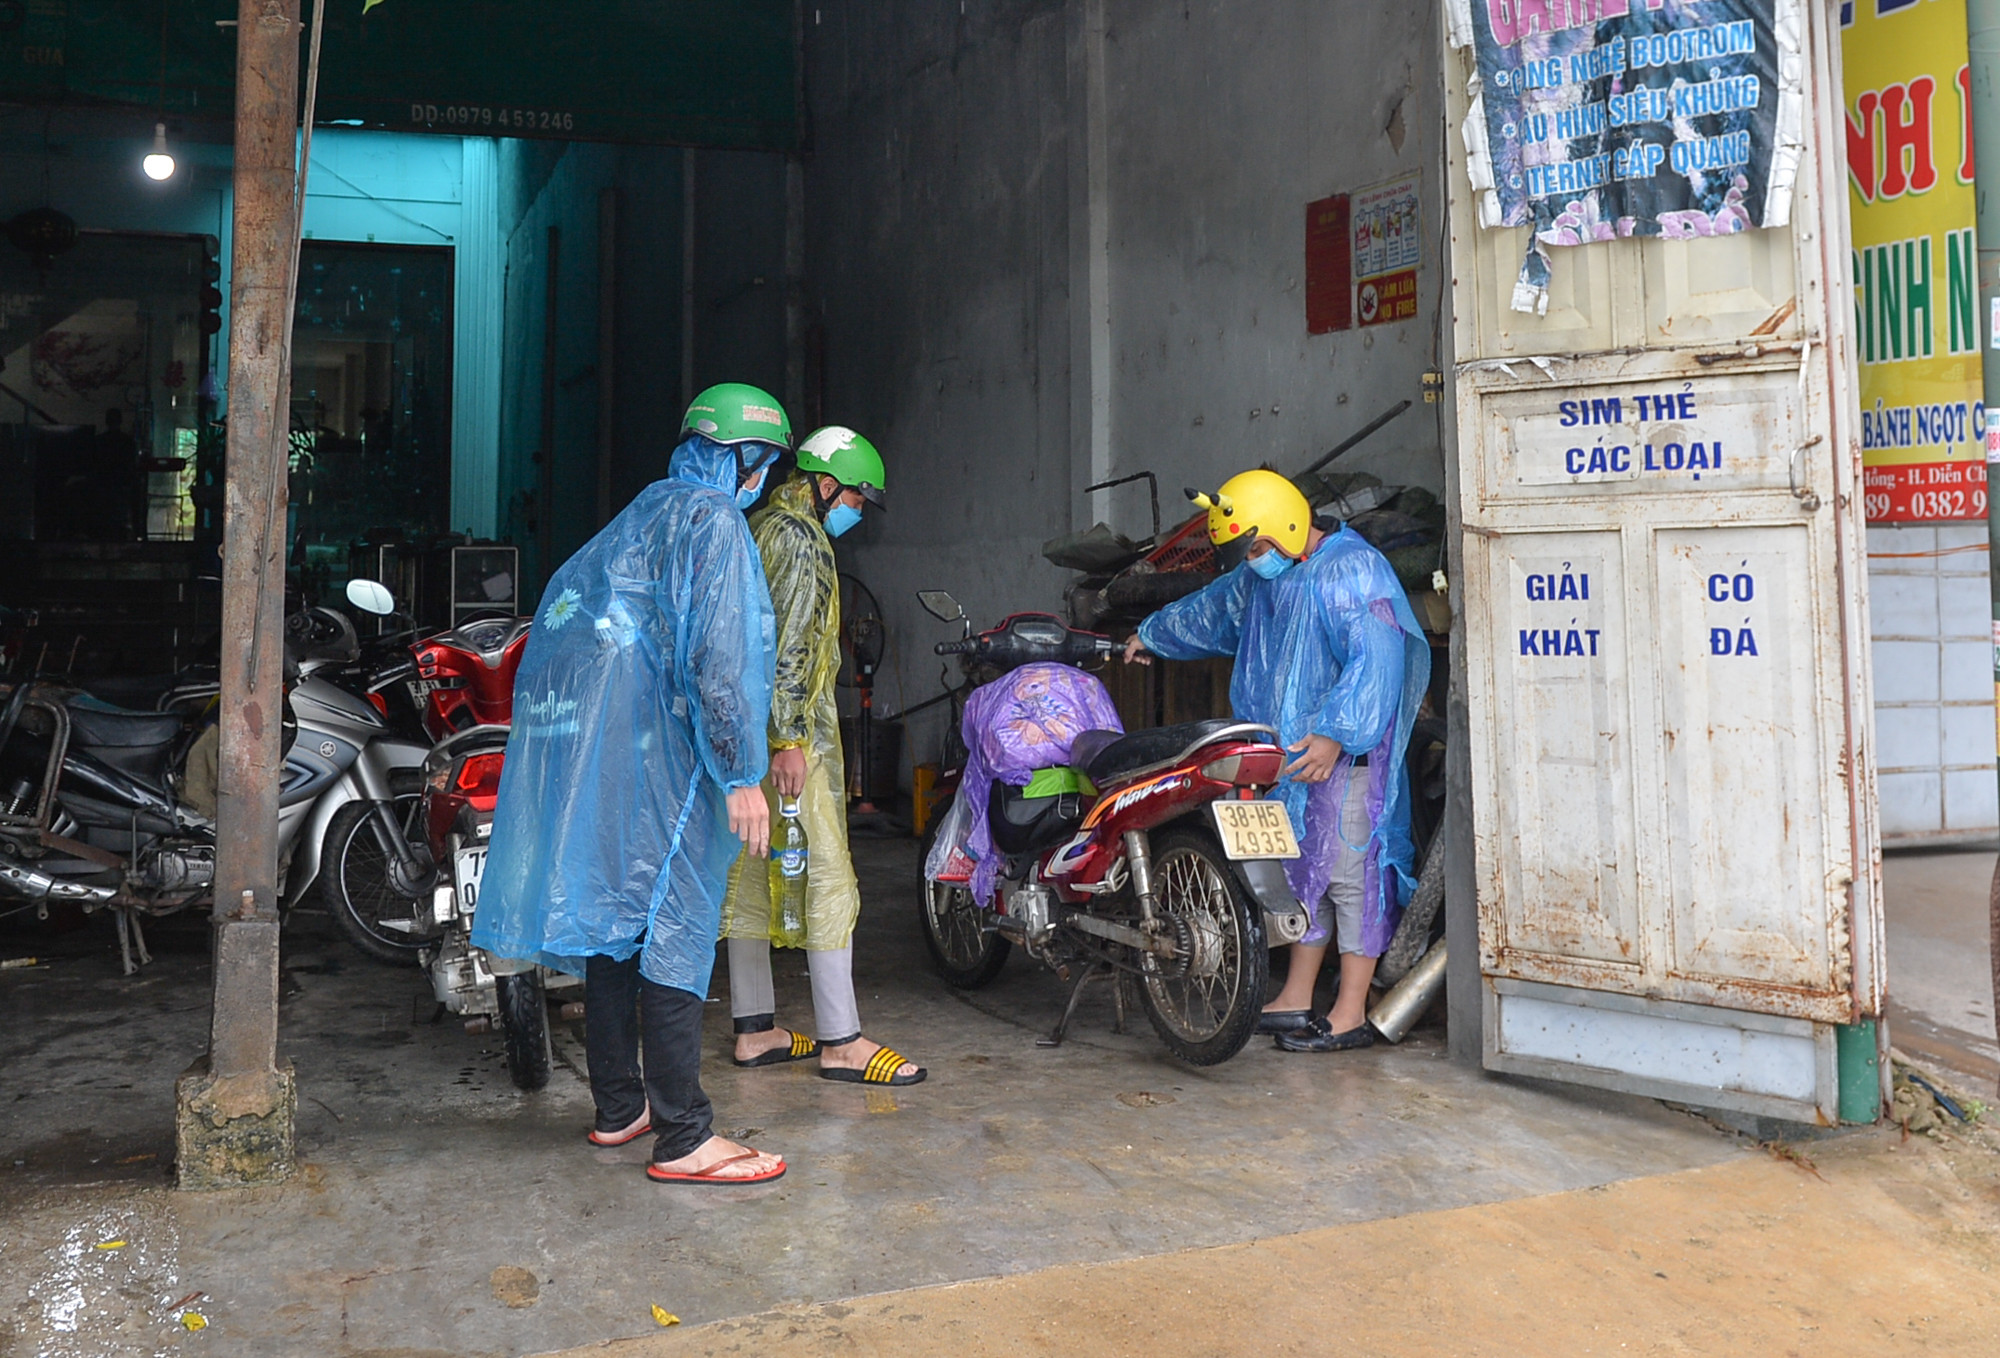 Xe của nhóm anh Lỳ Bá Xài hư nên đưa vào sửa tại một cửa hàng ở huyện Diễn Châu. Ảnh Thành Cường